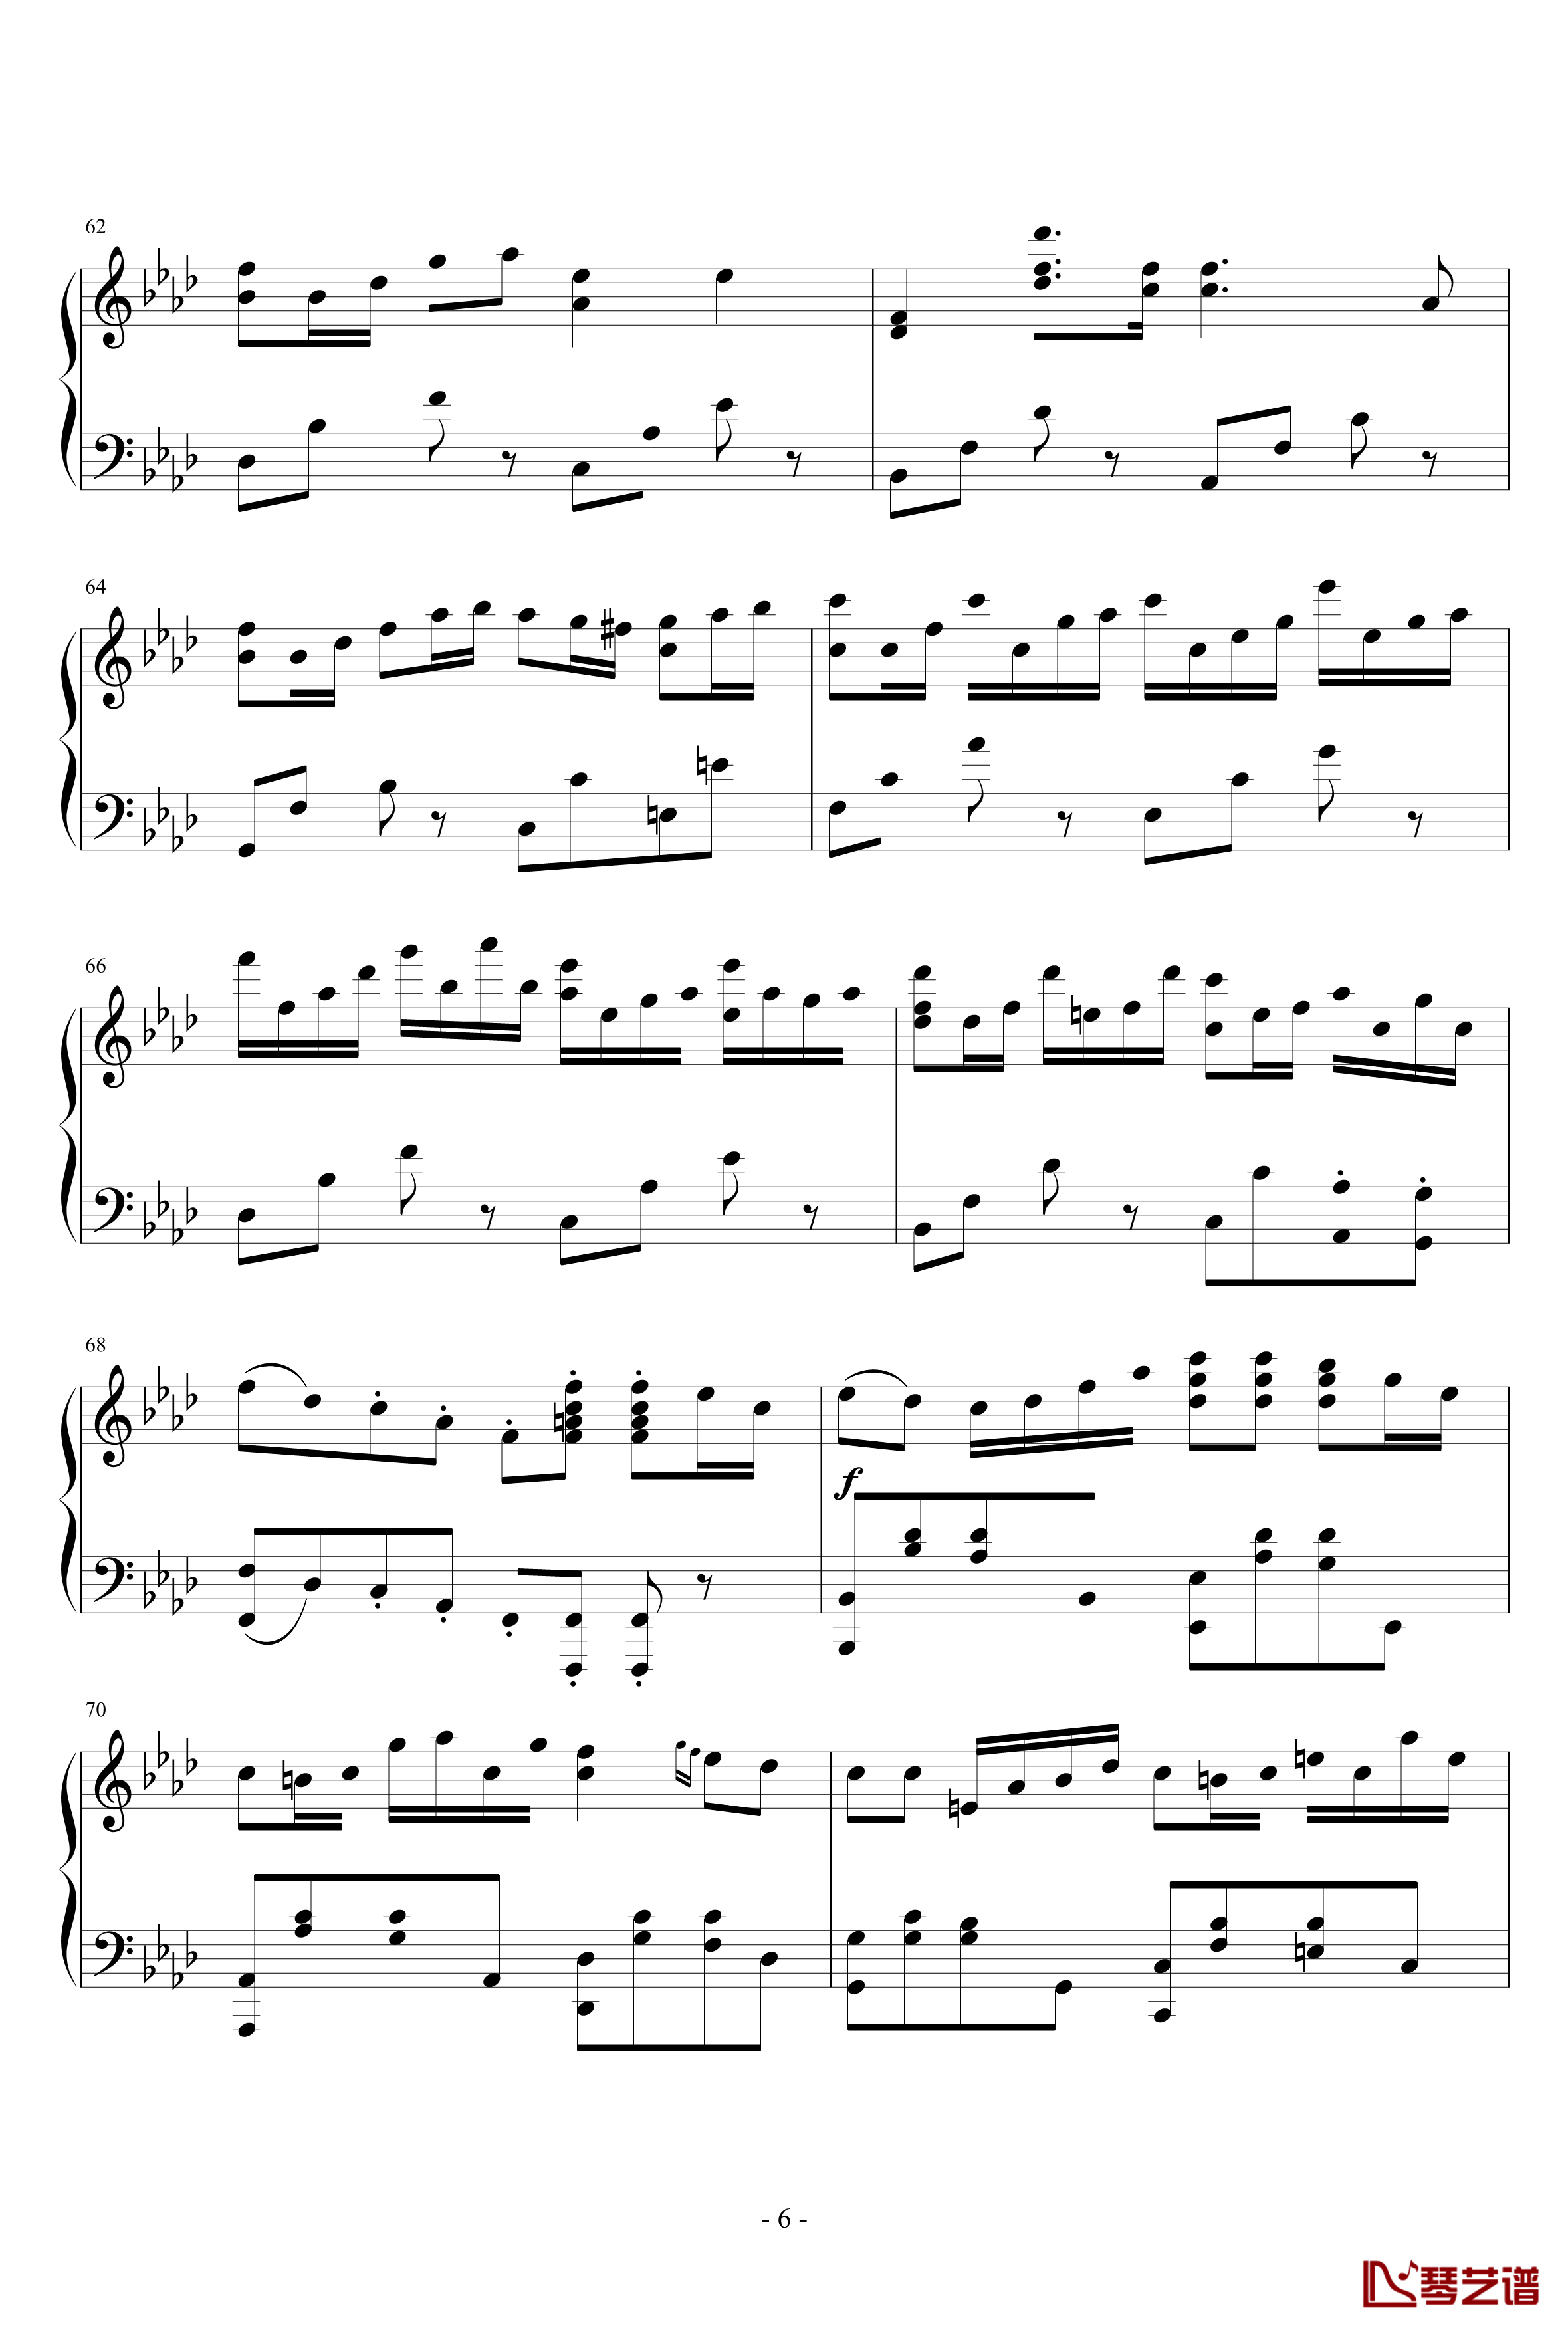 Piano ArrangementQuo Vadis钢琴谱-君往何处-M2U6